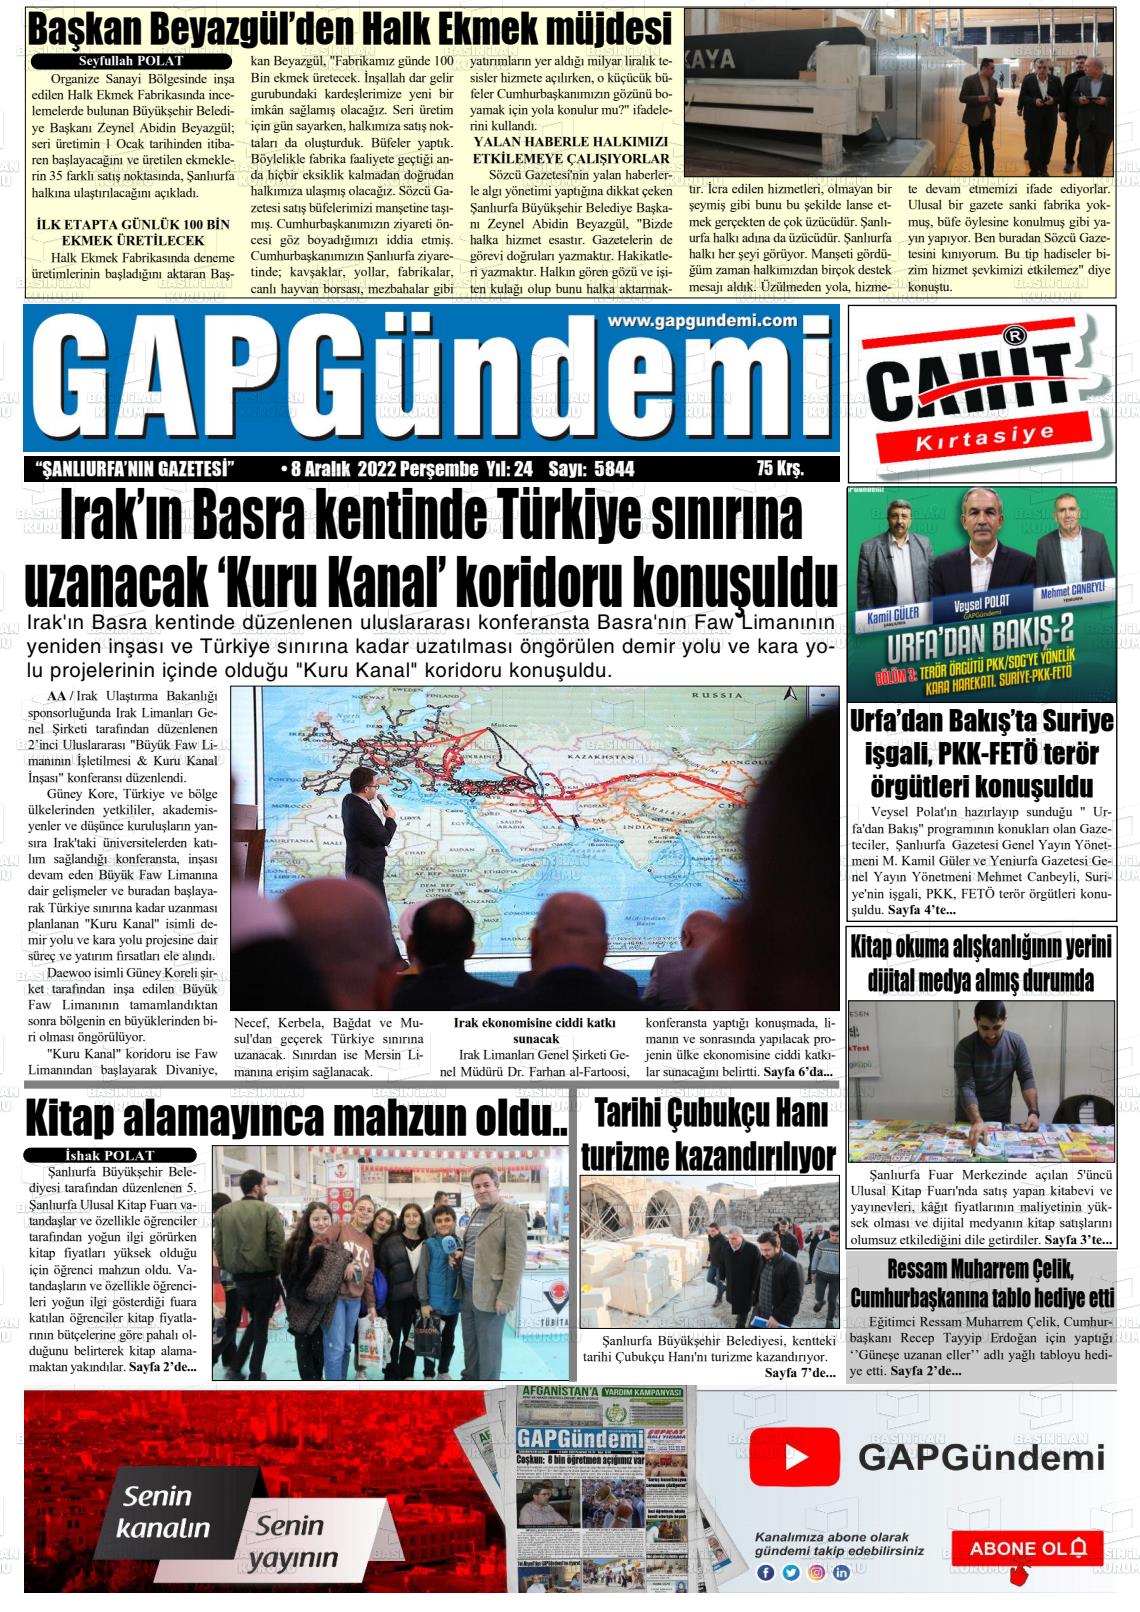 08 Aralık 2022 Gap Gündemi Gazete Manşeti